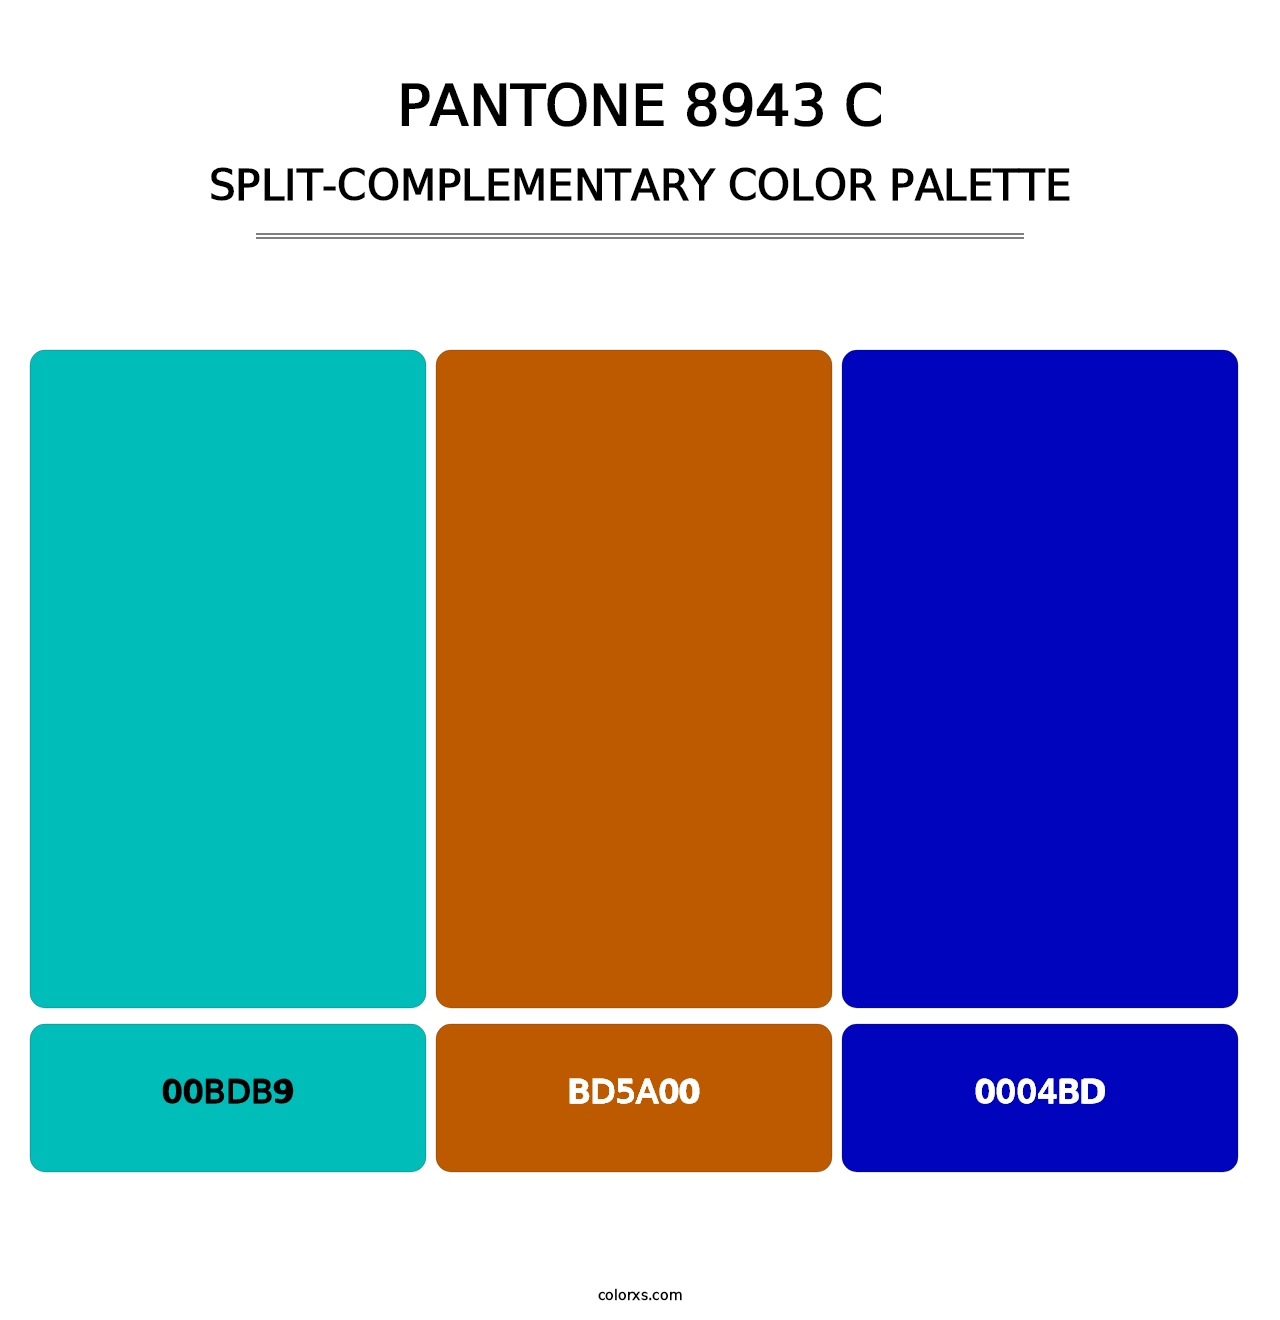 PANTONE 8943 C - Split-Complementary Color Palette